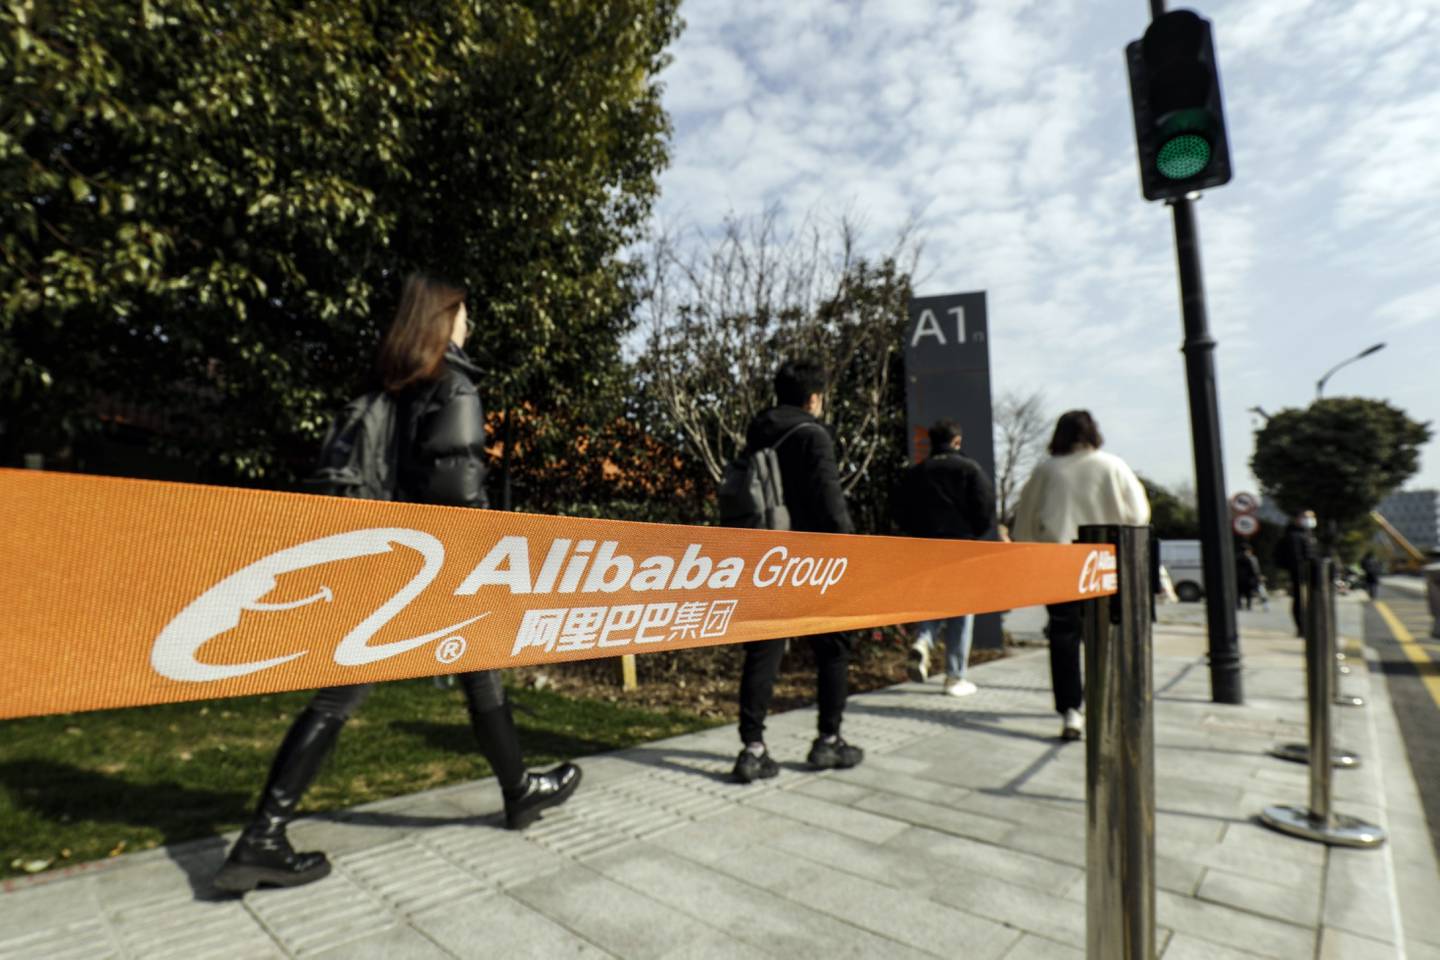 Sede central de Alibaba, que encolheu 58% na bolsa em um ano